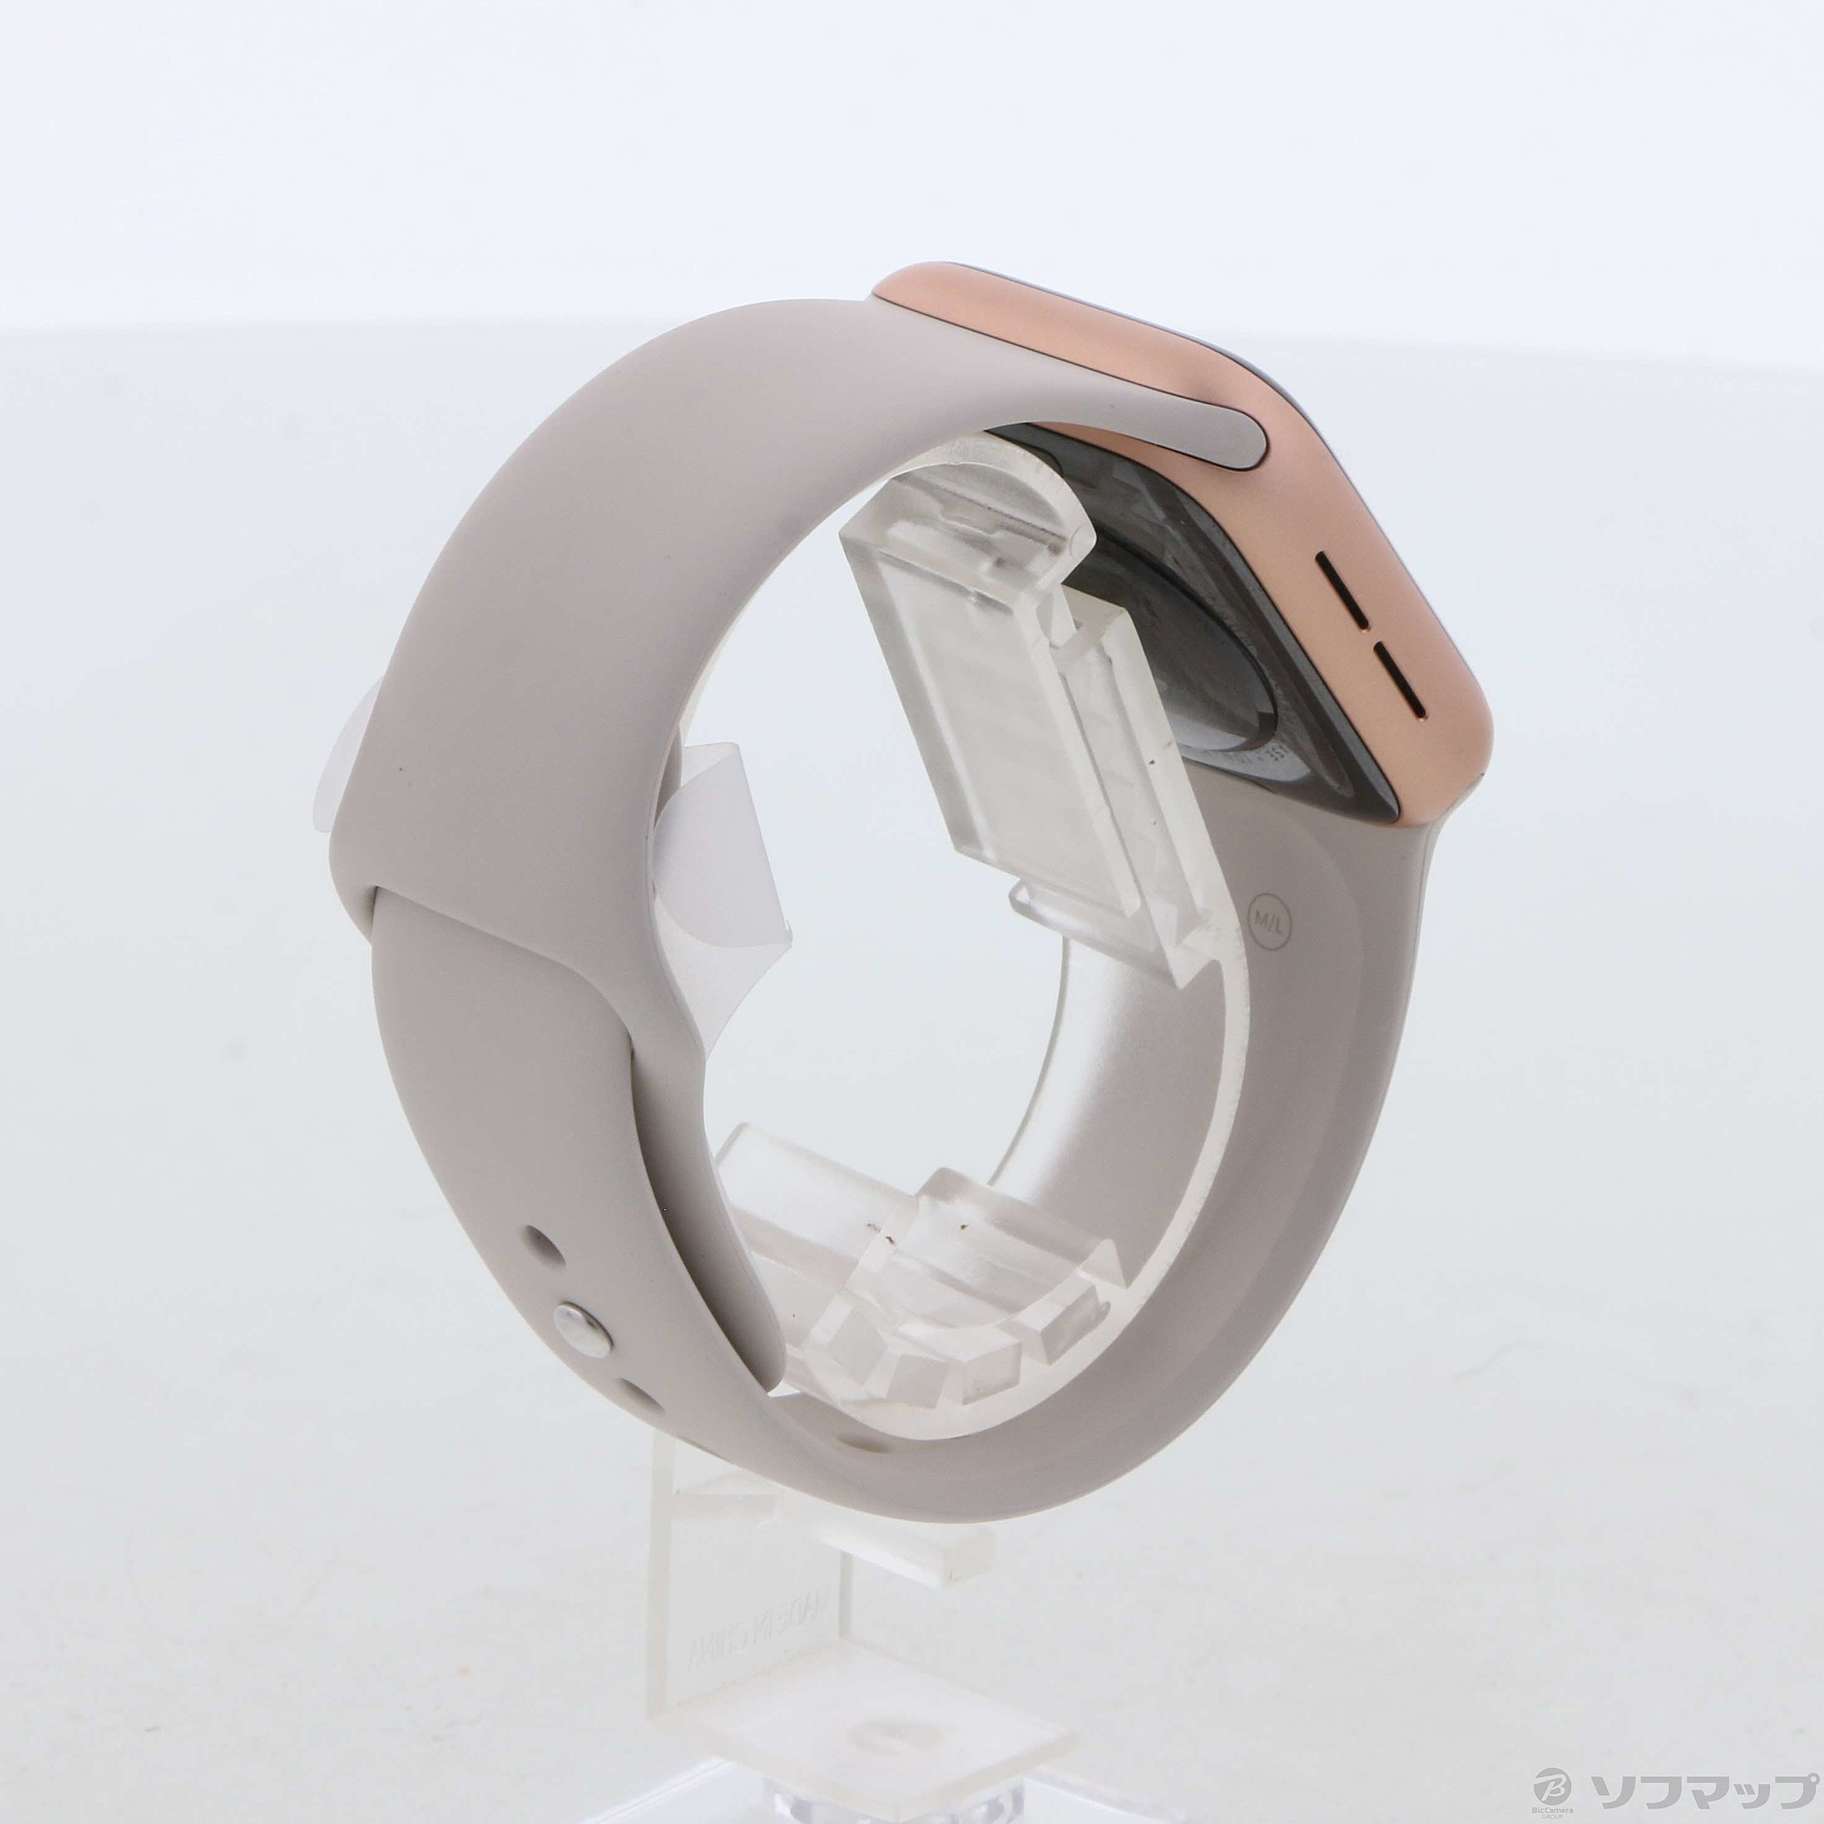 中古】Apple Watch SE GPS 40mm ゴールドアルミニウムケース スター